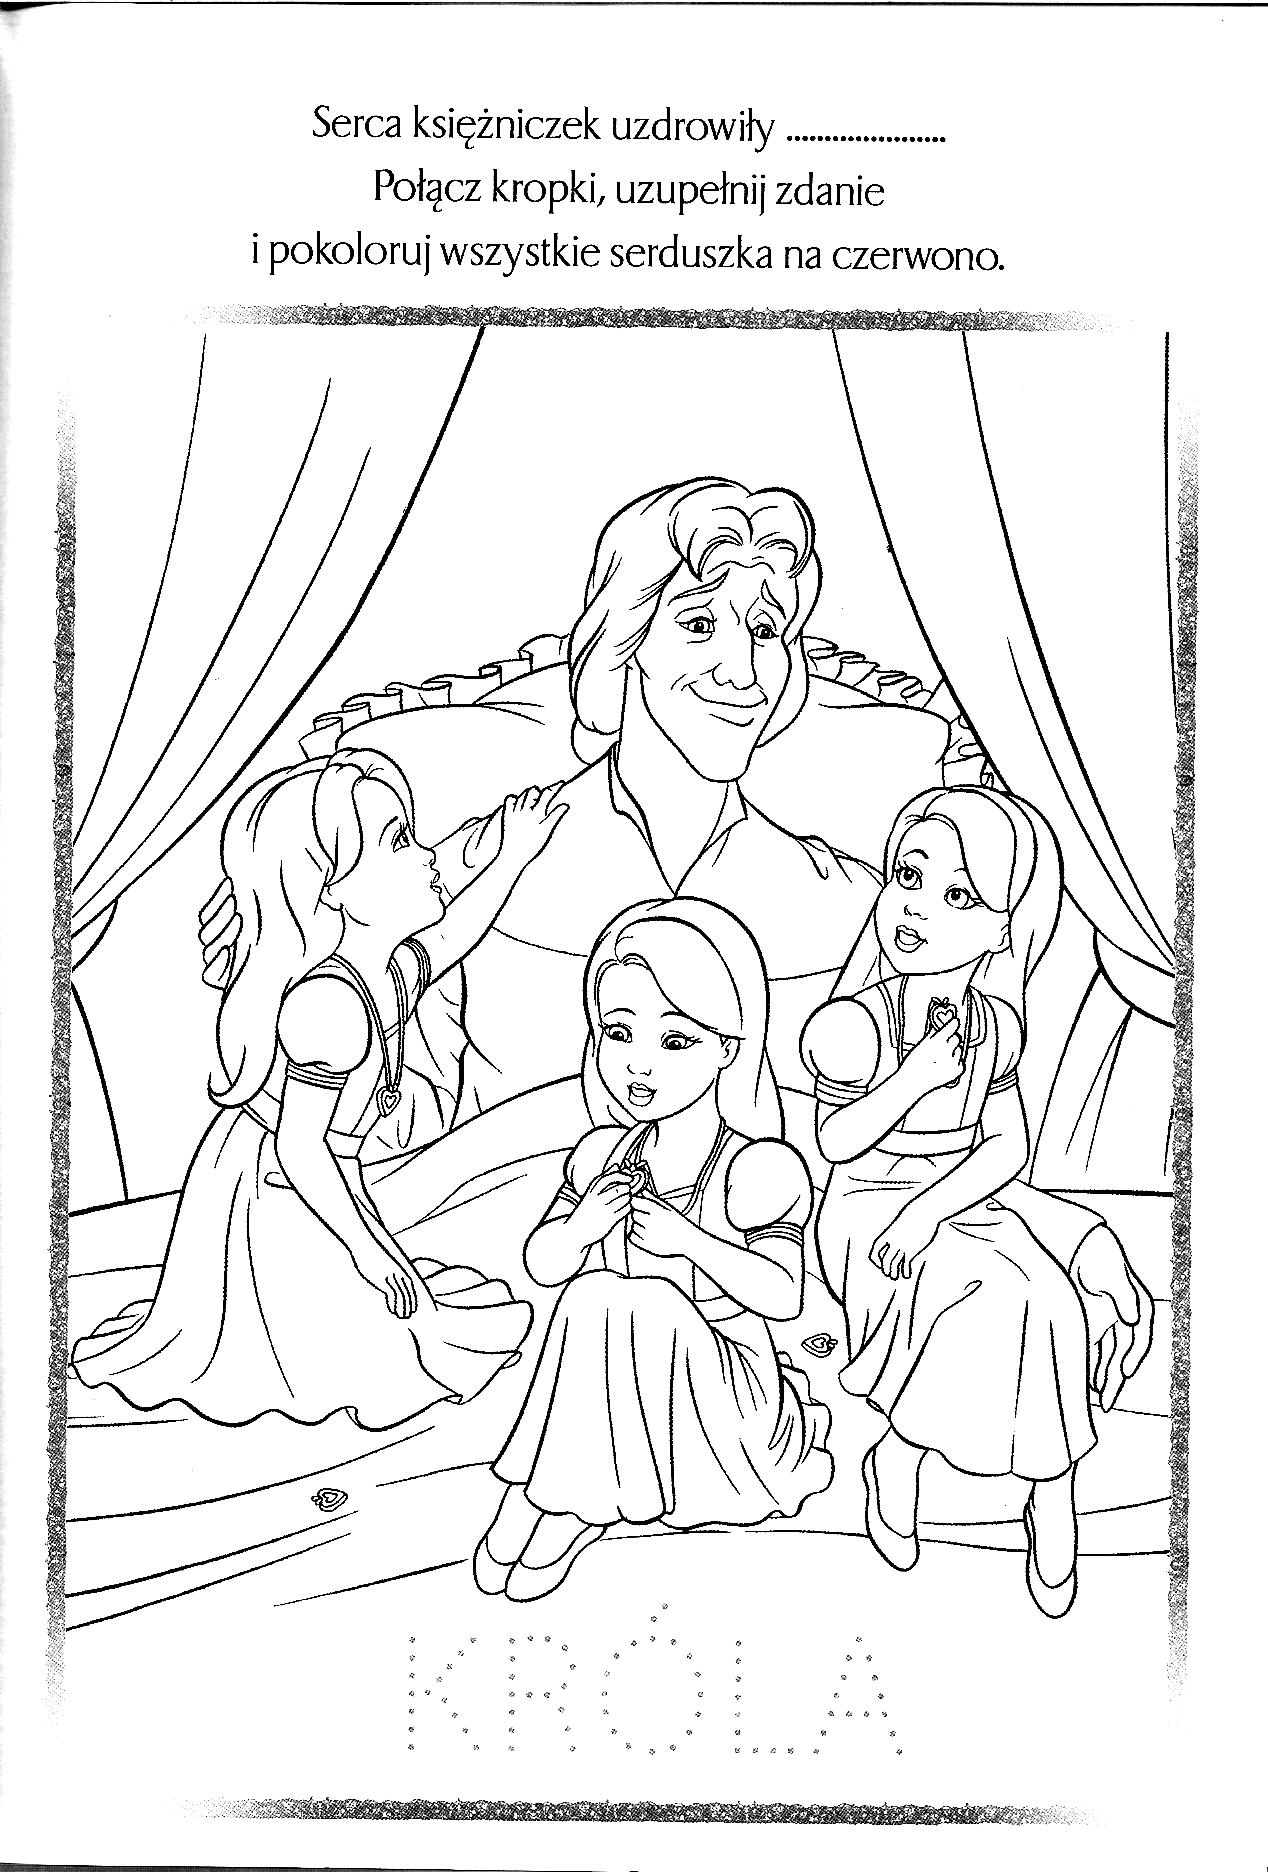 Kolorowanka księżniczka trzy małe księżniczki w sukniach siedzą na królewskim łożu i spoglądają na króla